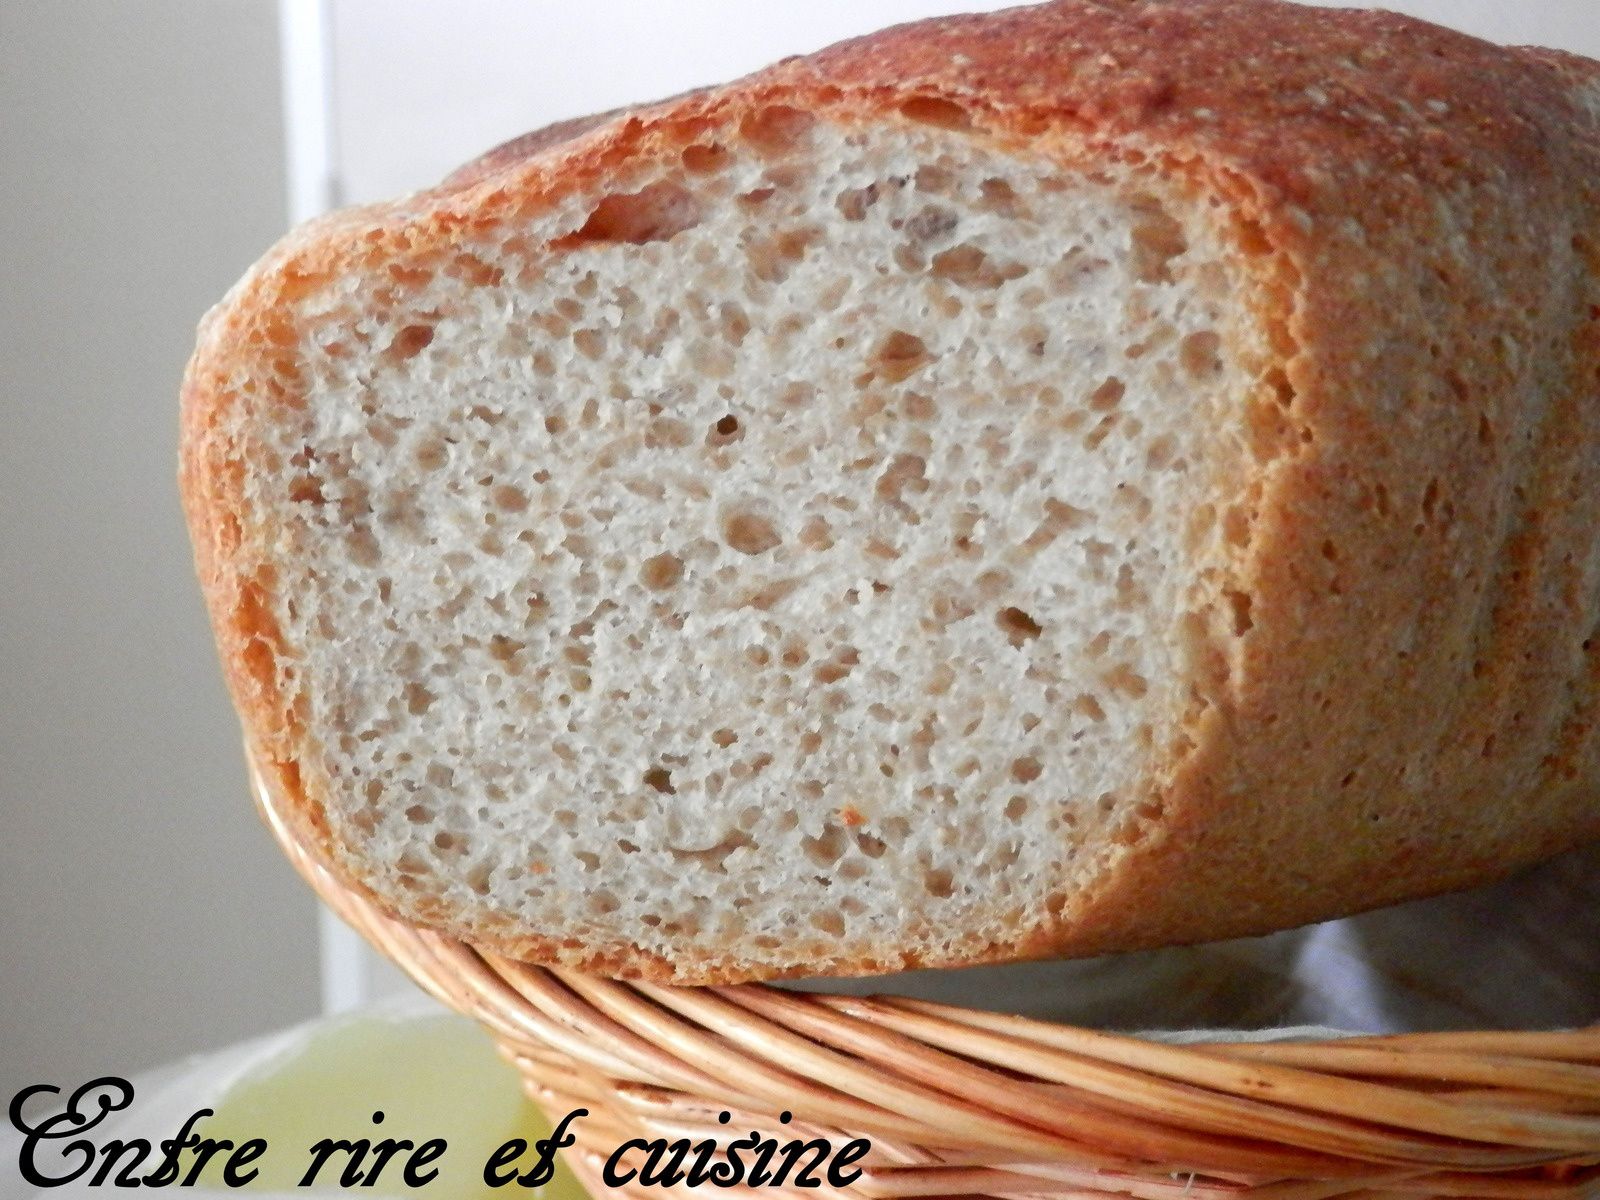 Miche de pain au Levain - 2